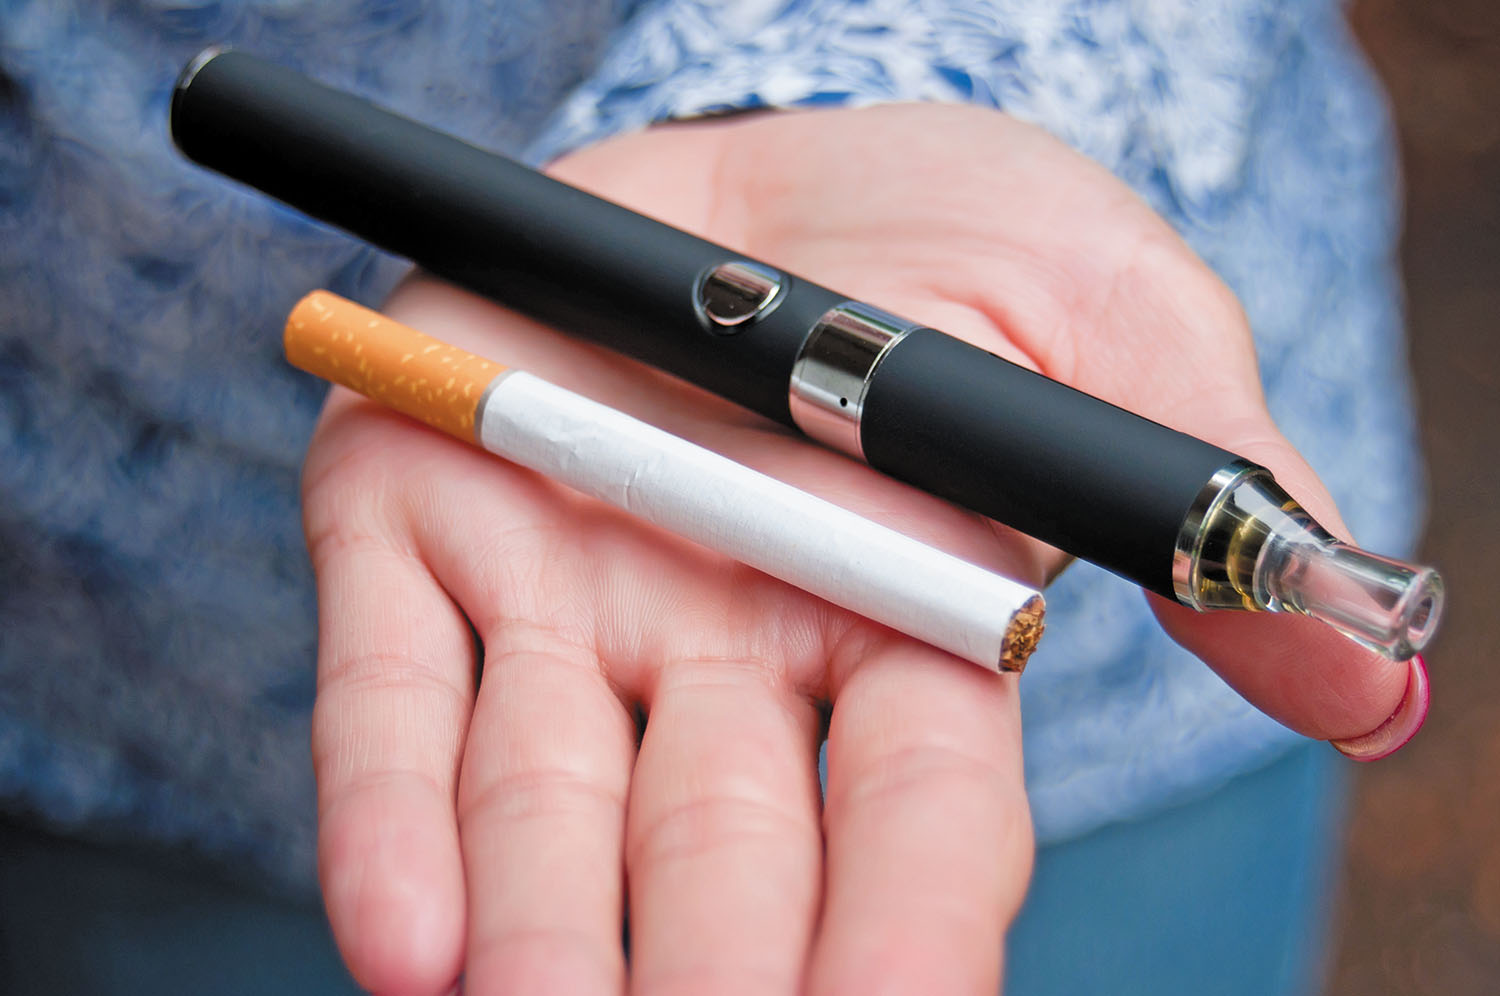 Электронные сигареты увеличивают риск возникновения инфаркта